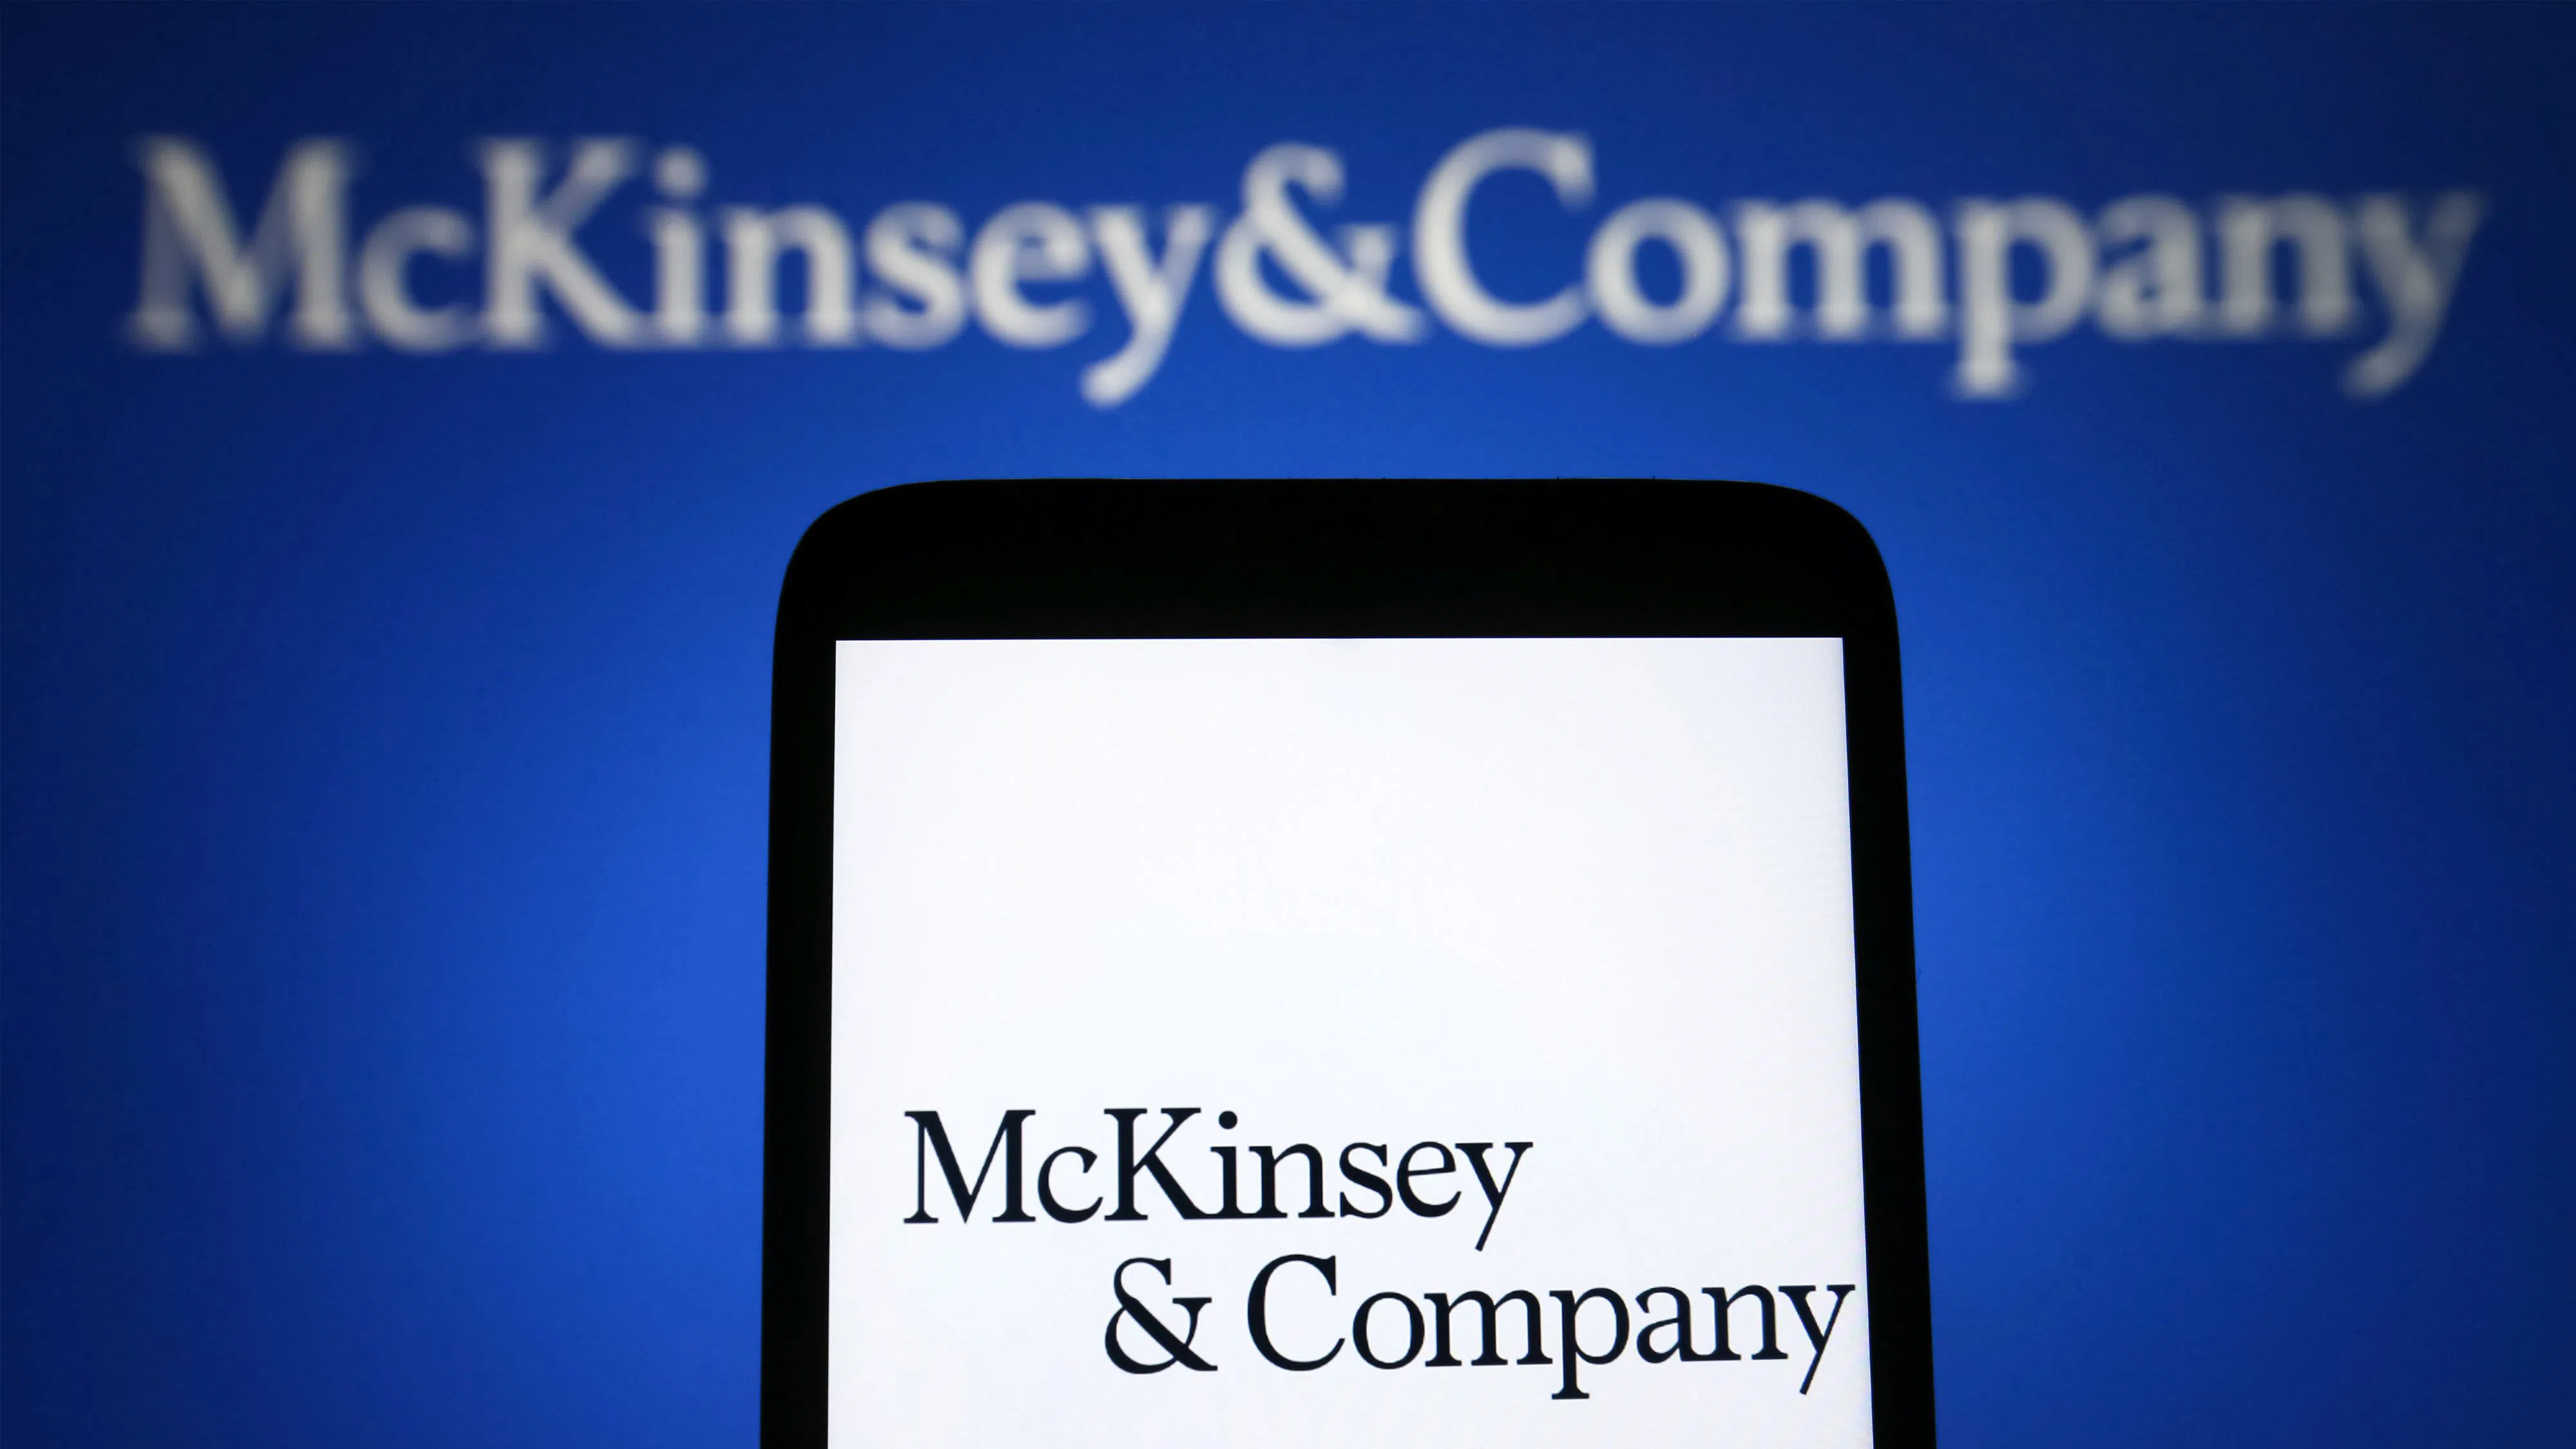 McKinsey съкращава над 300 работни места заради спад в търсенето на консултантски услуги